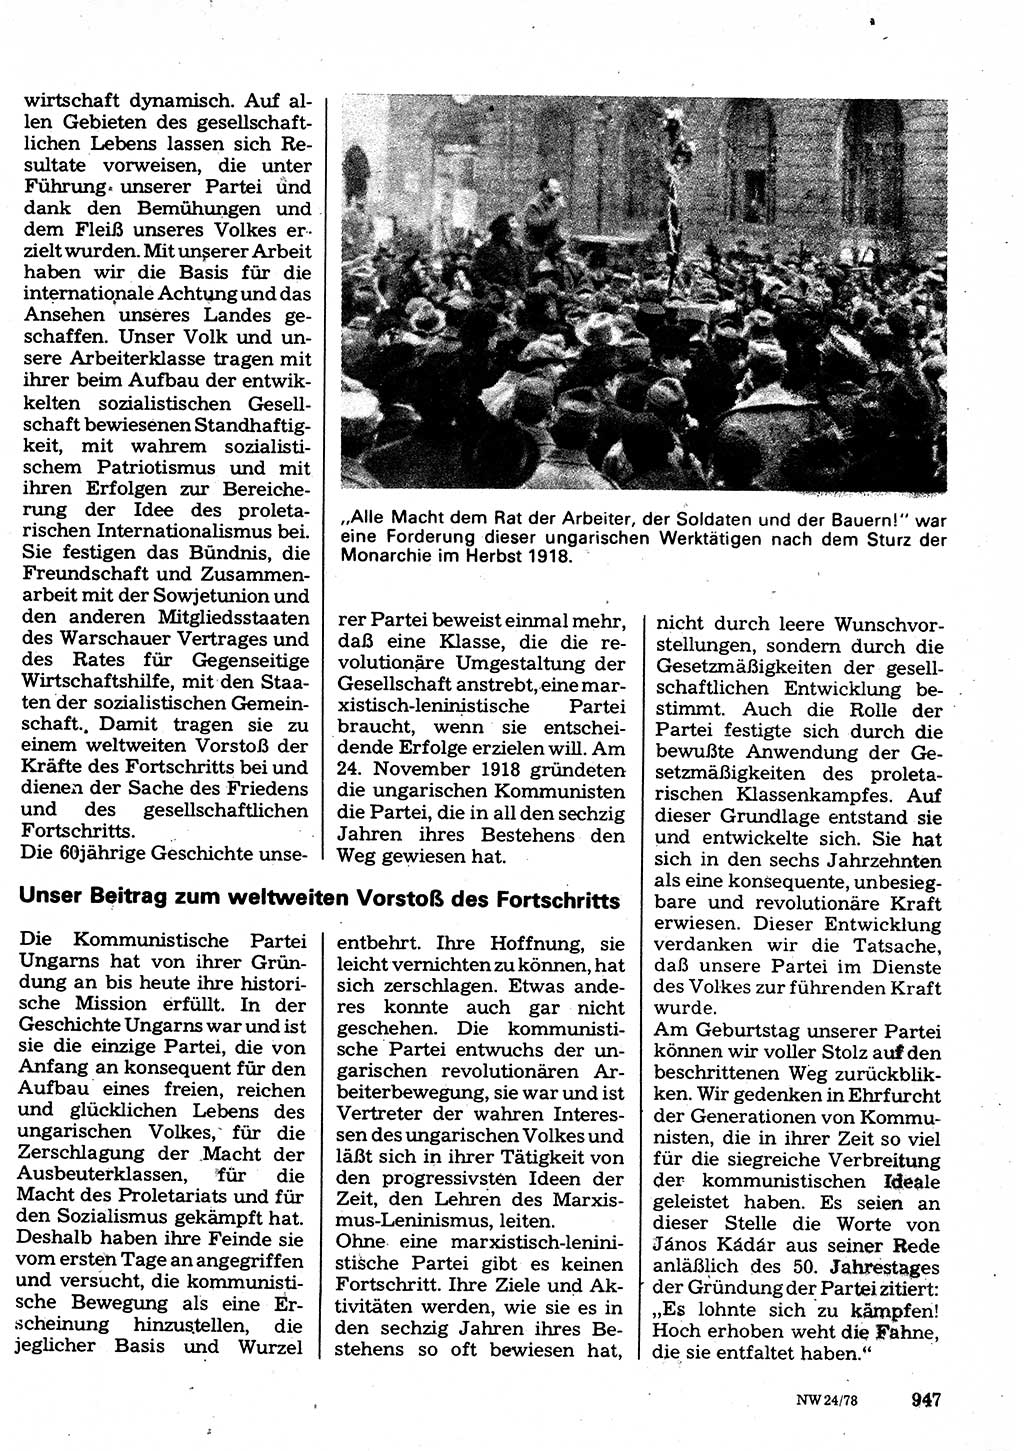 Neuer Weg (NW), Organ des Zentralkomitees (ZK) der SED (Sozialistische Einheitspartei Deutschlands) für Fragen des Parteilebens, 33. Jahrgang [Deutsche Demokratische Republik (DDR)] 1978, Seite 947 (NW ZK SED DDR 1978, S. 947)